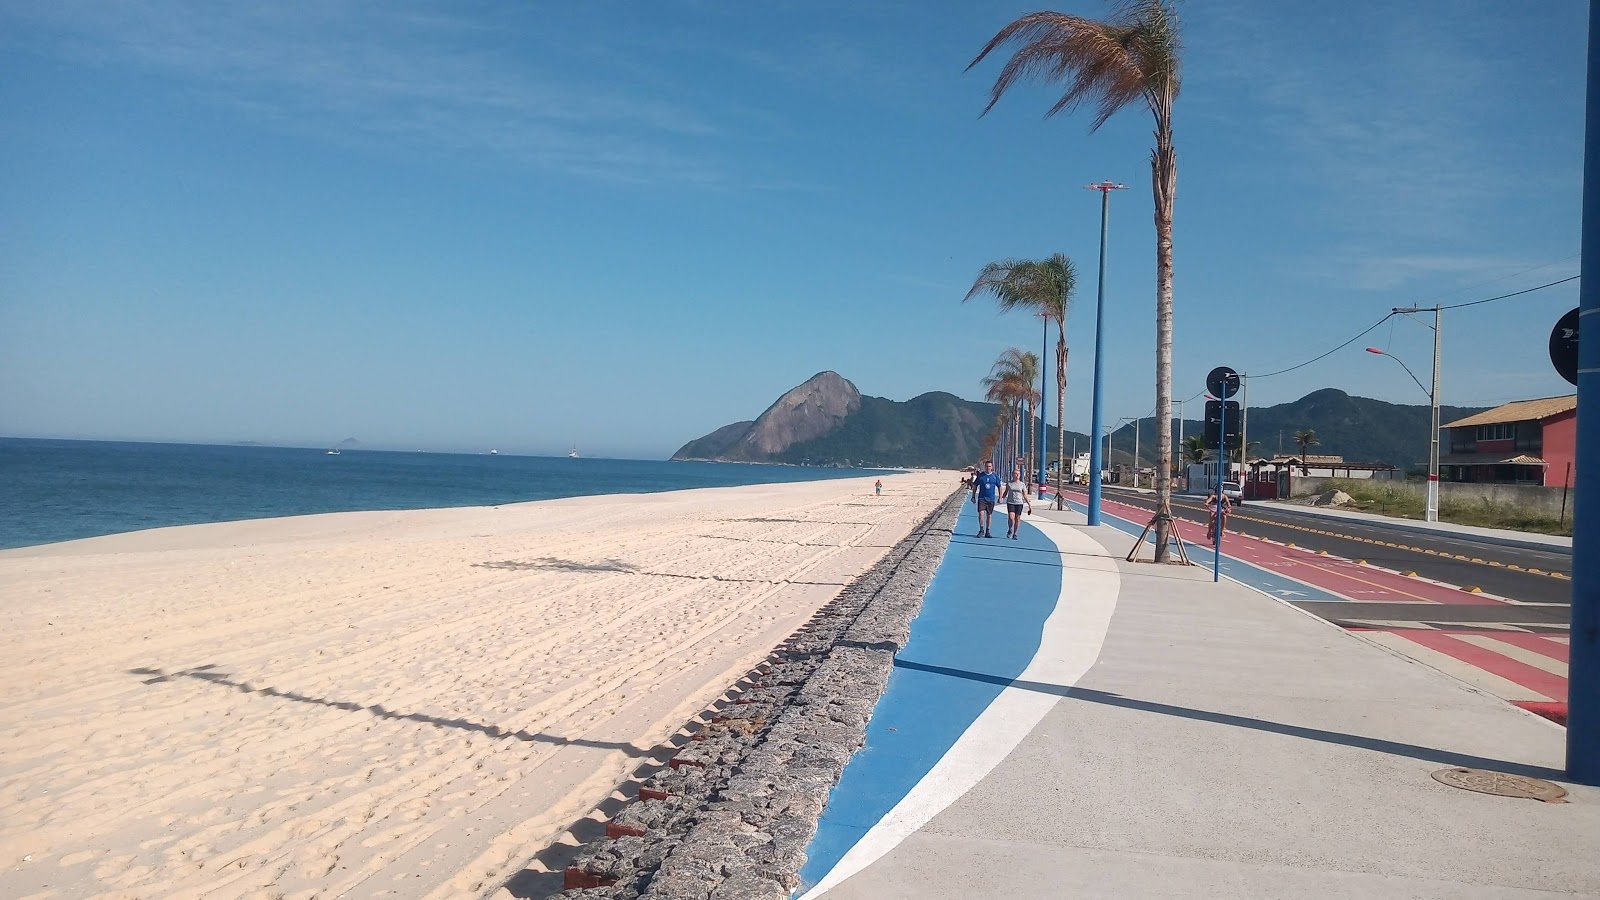 Praia do Frances的照片 - 受到放松专家欢迎的热门地点